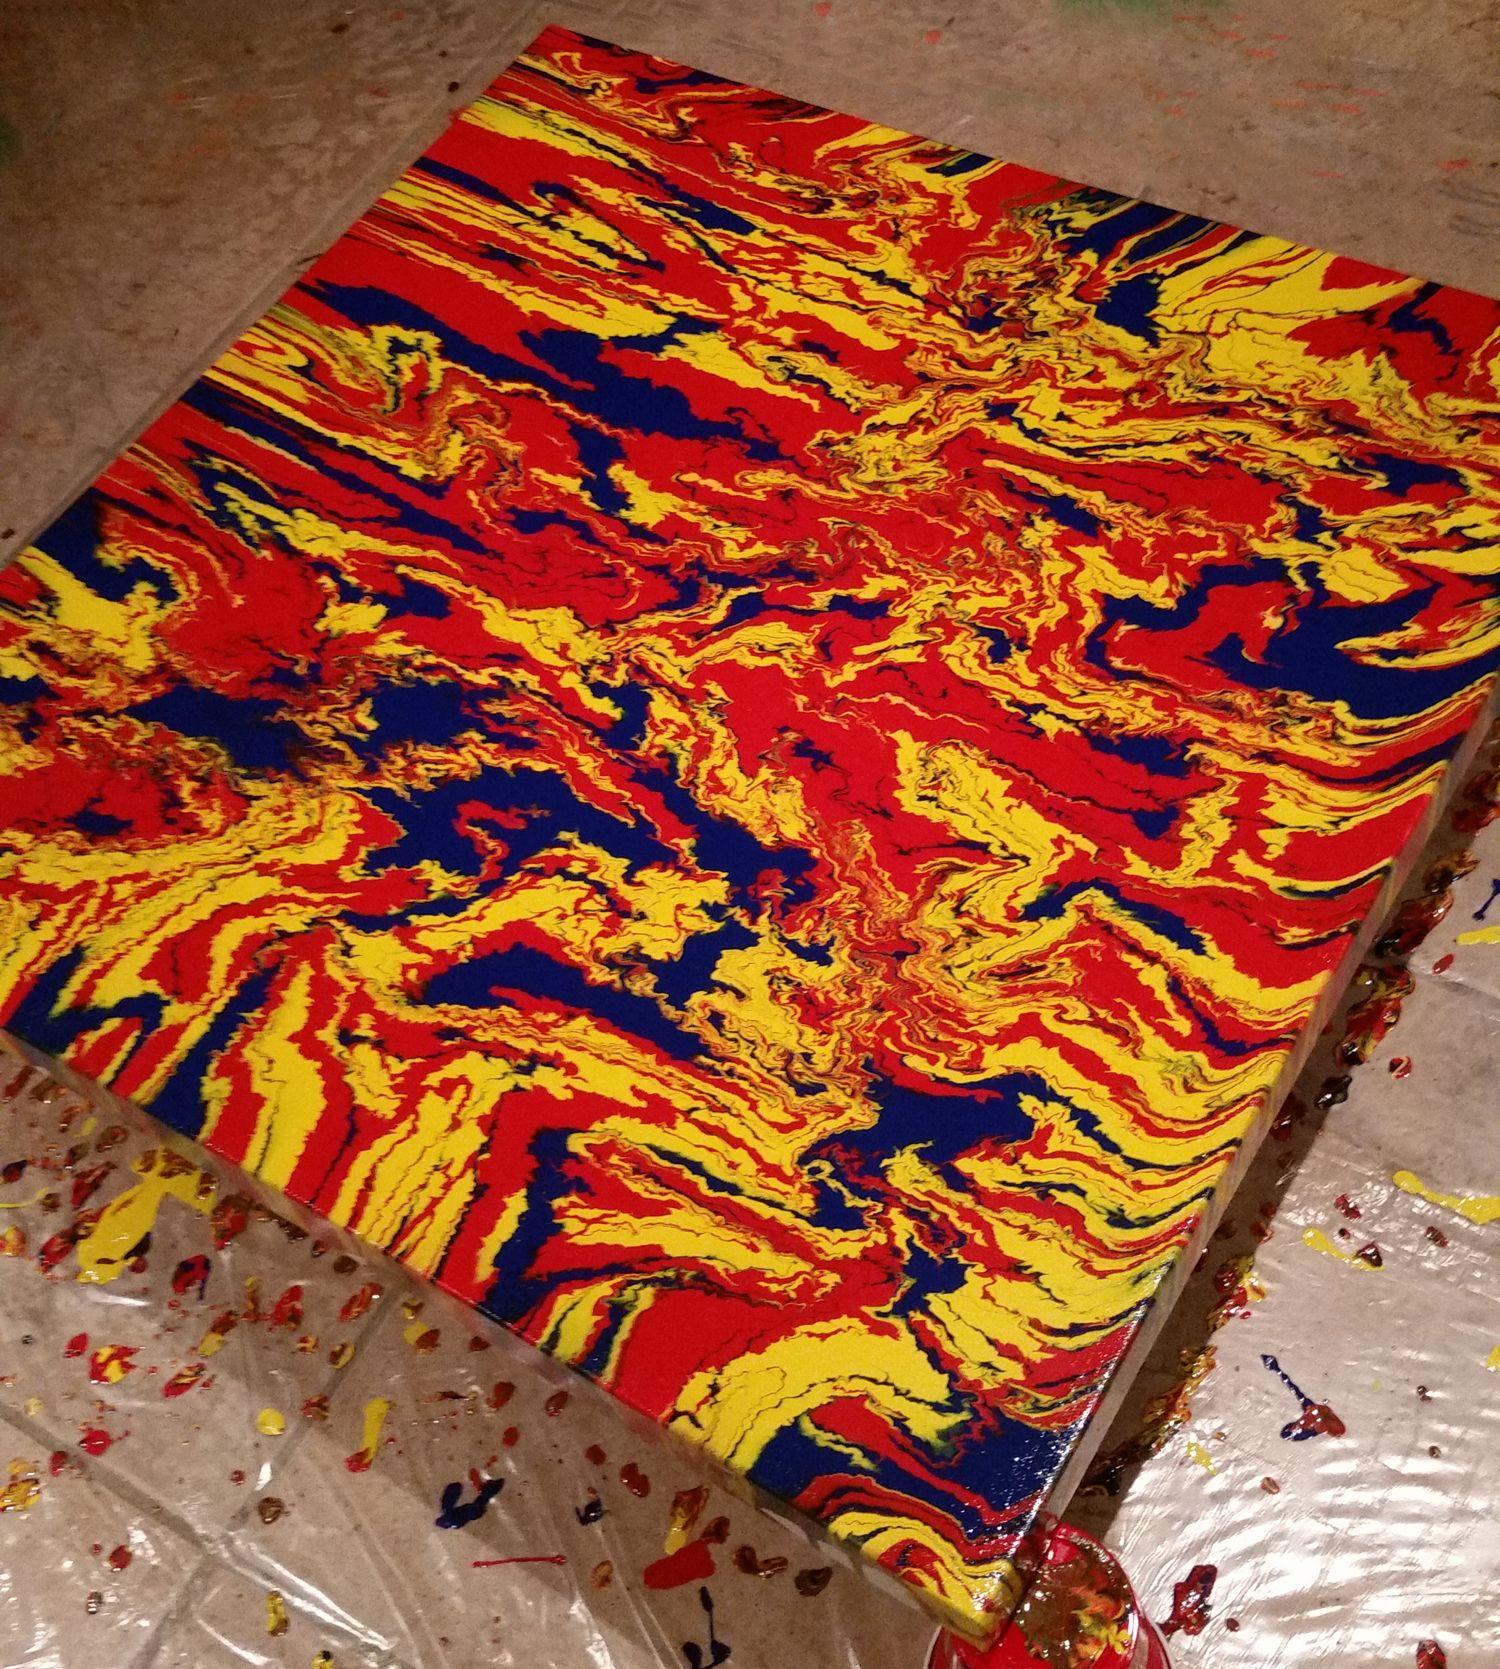 Kühnes abstraktes expressionistisches Gemälde mit leuchtenden Primärfarben: Rot, Gelb und Blau. Dieses Originalgemälde ist Teil der 